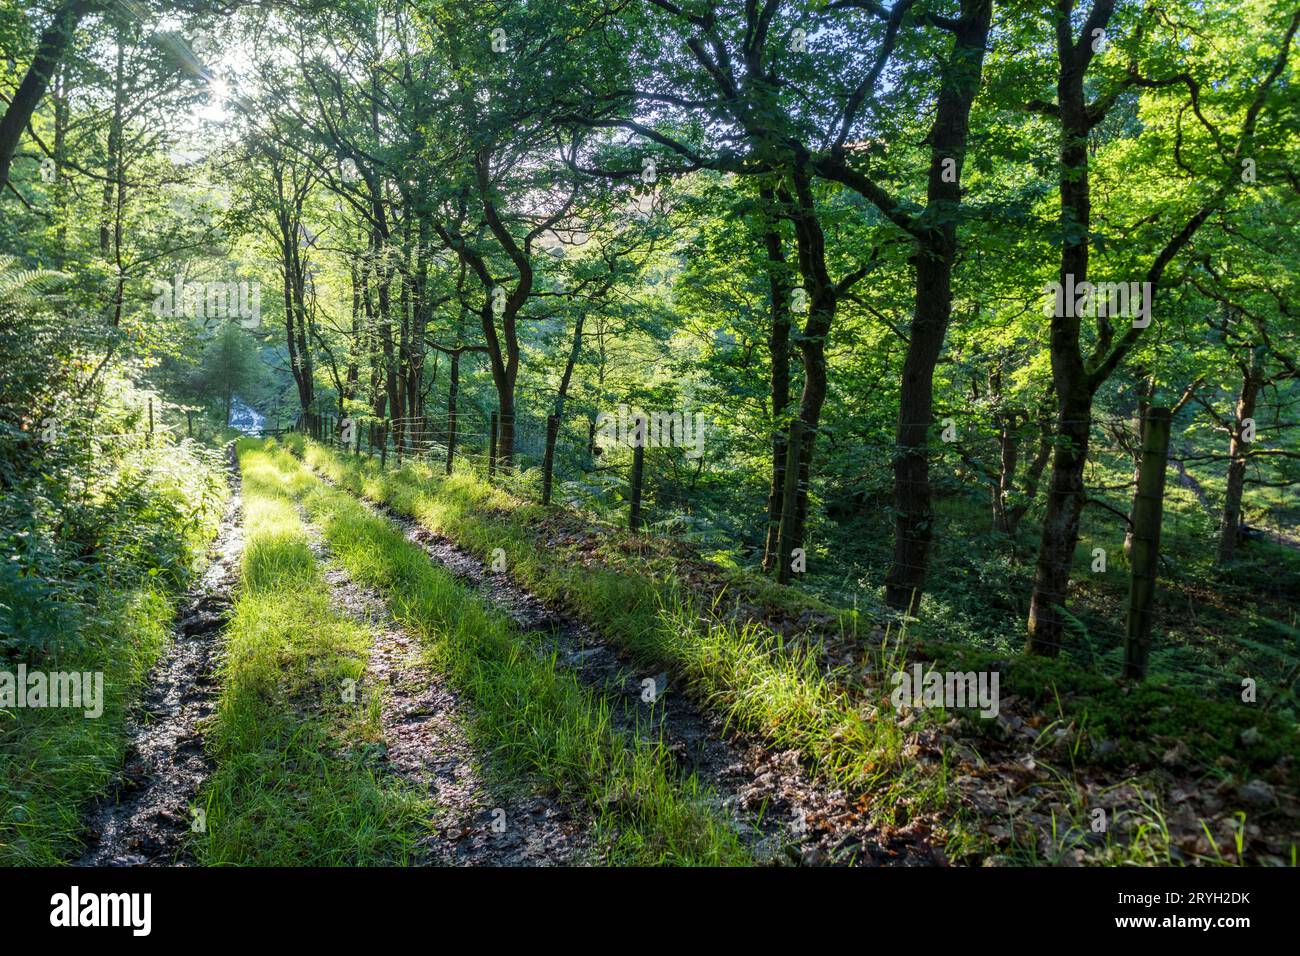 Parcourez la forêt de chênes sessiles (Quercus petraea) sous la lumière du soleil du soir. Powys, pays de Galles. Juillet. Banque D'Images